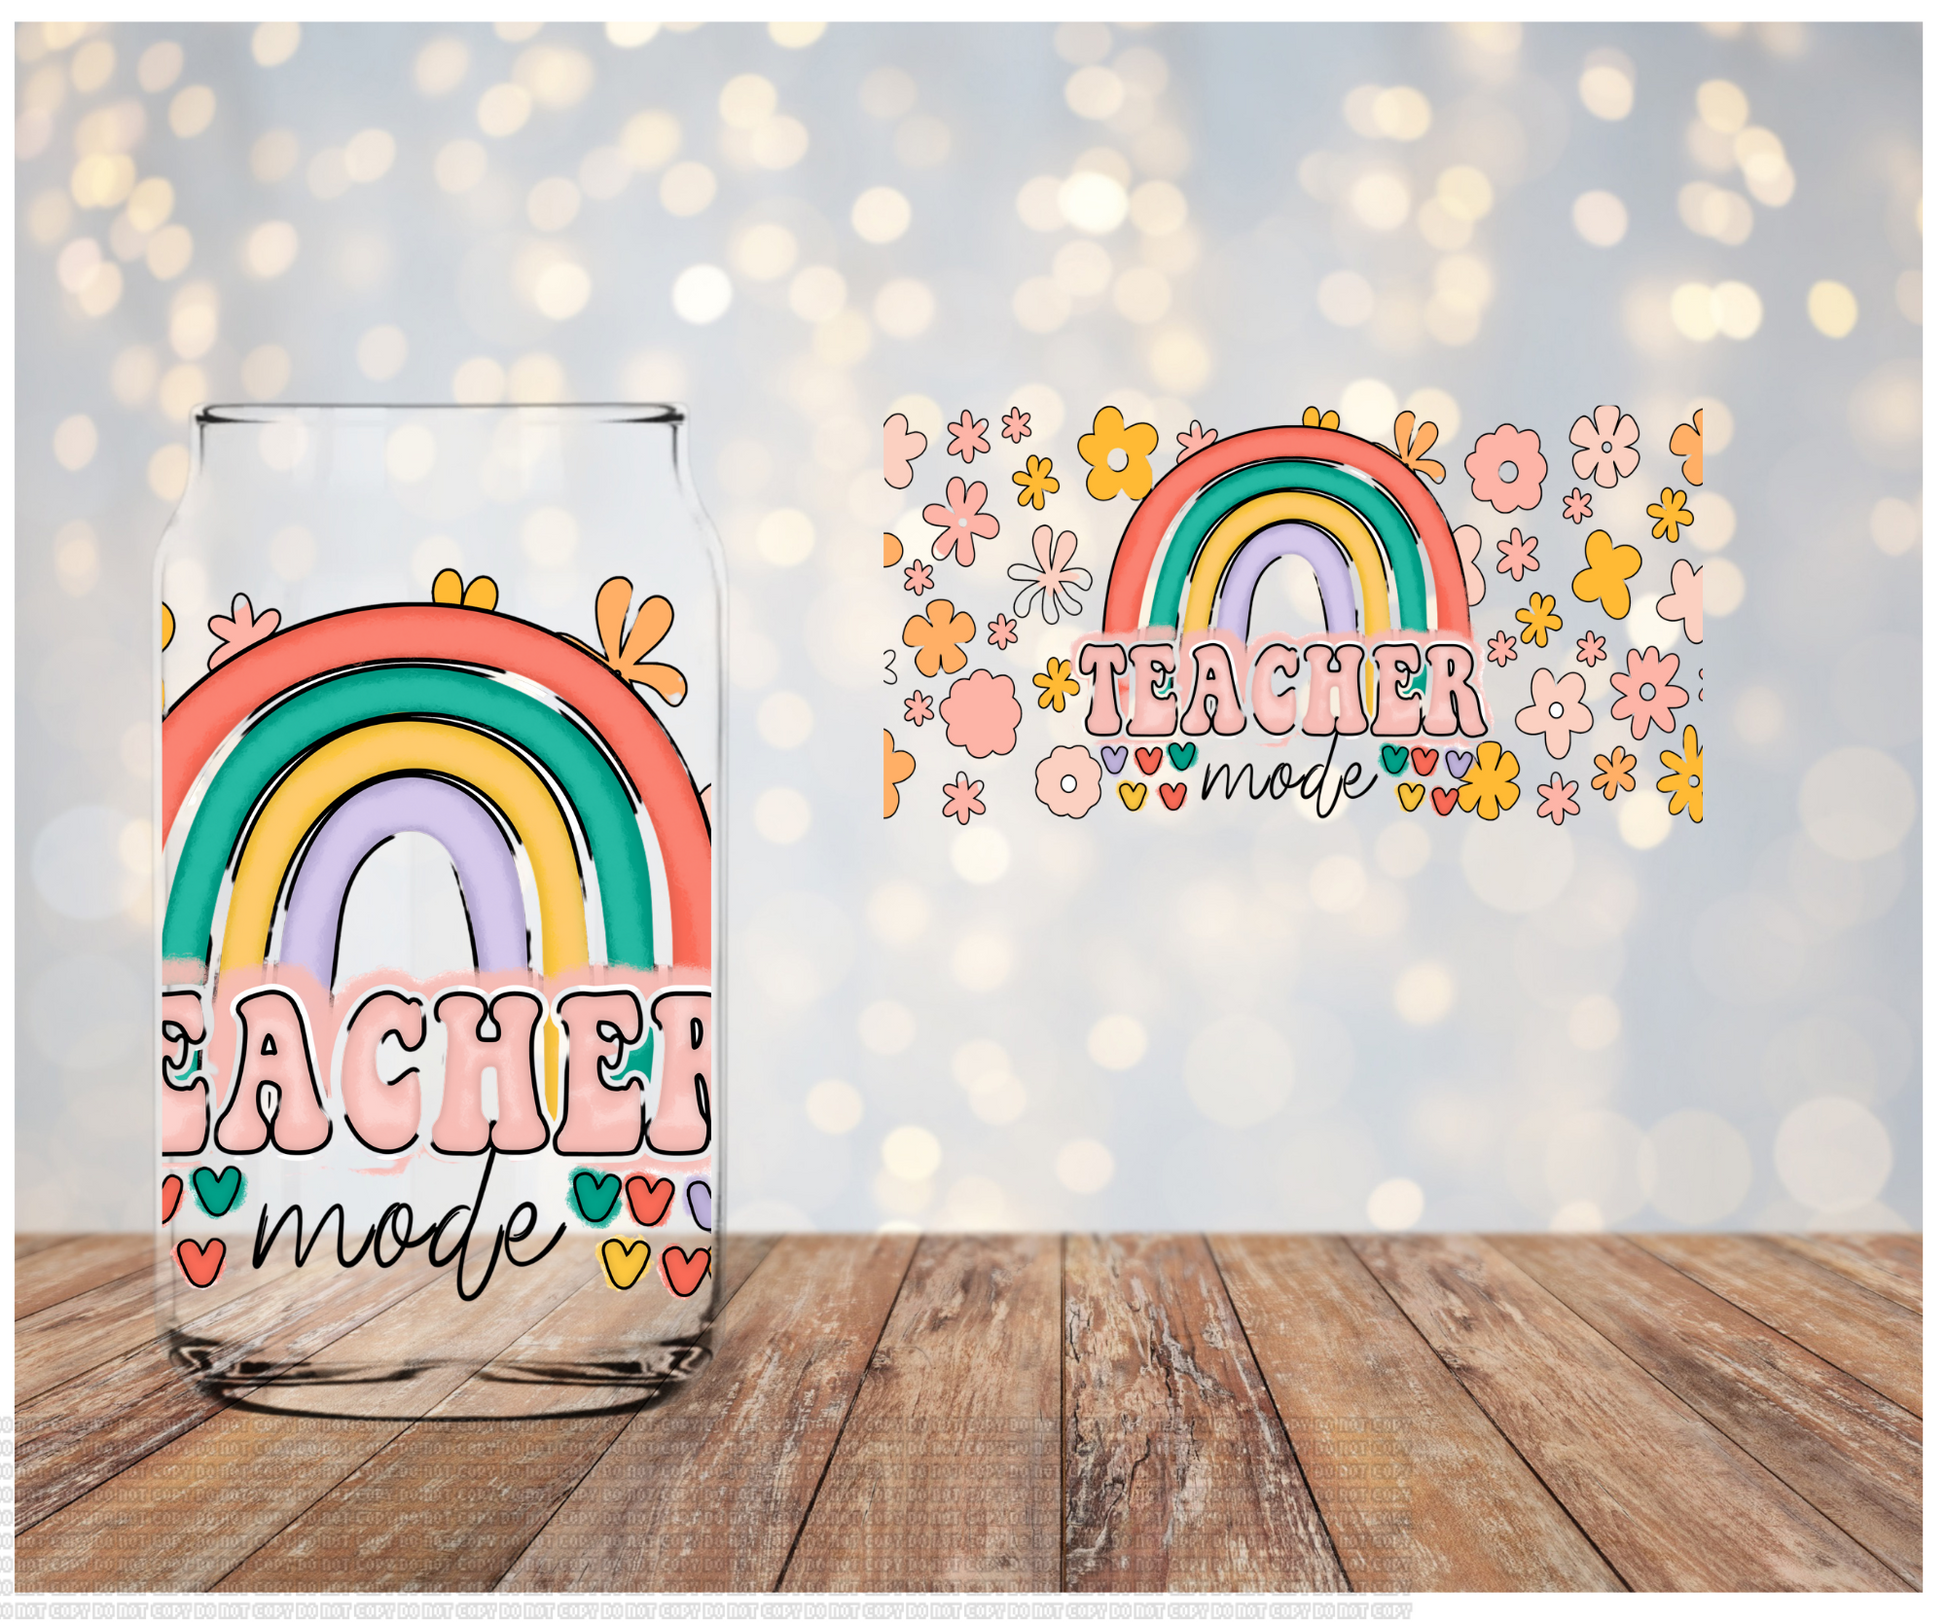 Teacher Rainbow UV DTF Cup Wrap